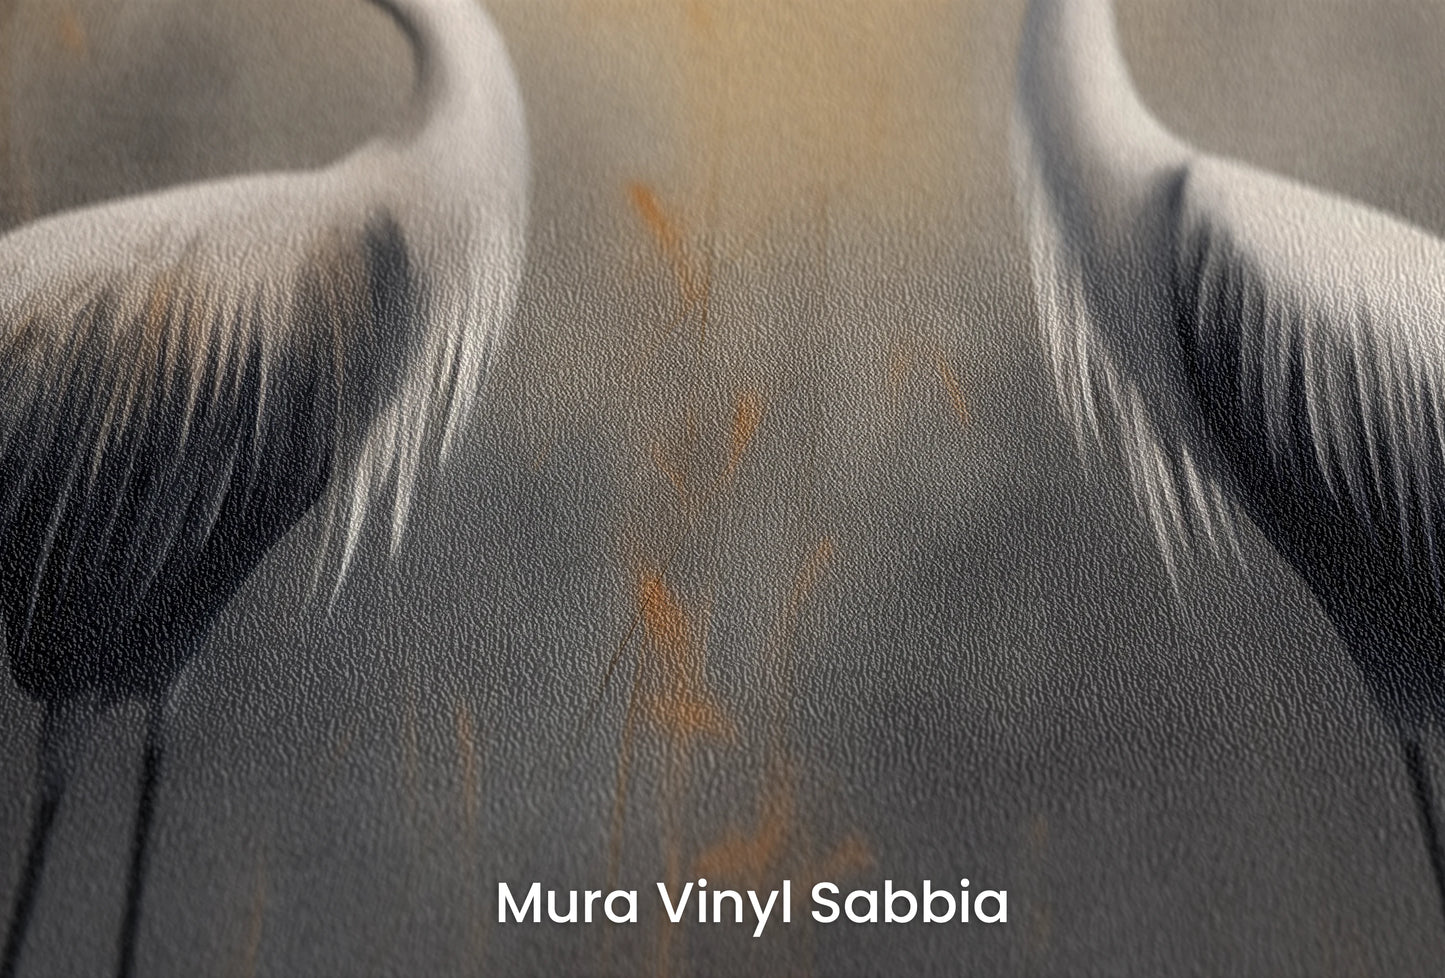 Zbliżenie na artystyczną fototapetę o nazwie Solemn Duet na podłożu Mura Vinyl Sabbia struktura grubego ziarna piasku.